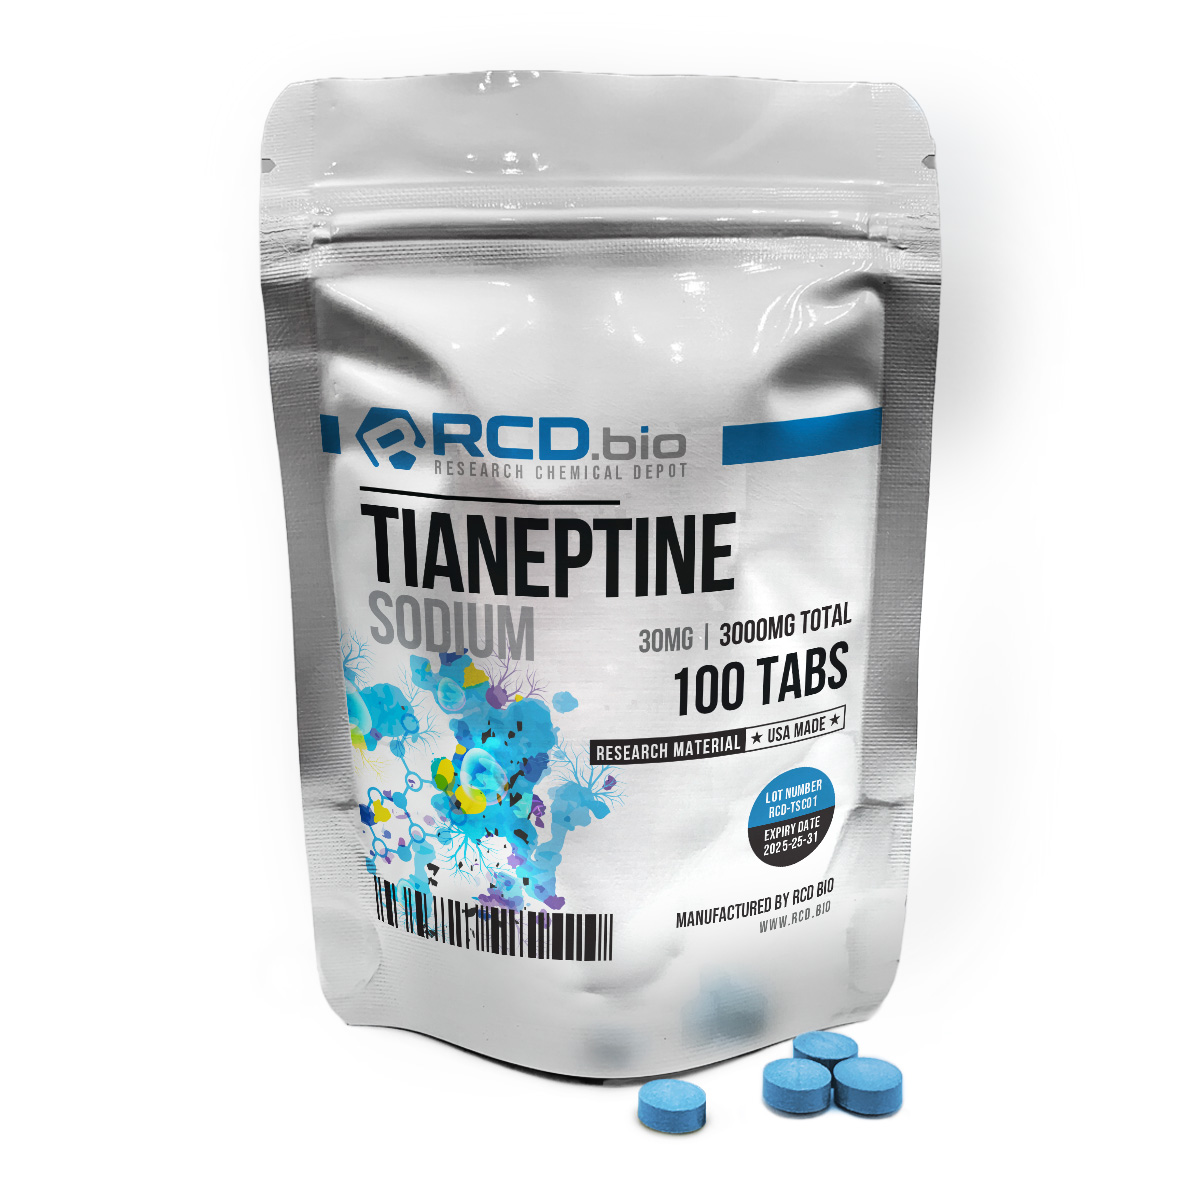 Tianeptine Sodium 30mg 100tabs-70x70_NU